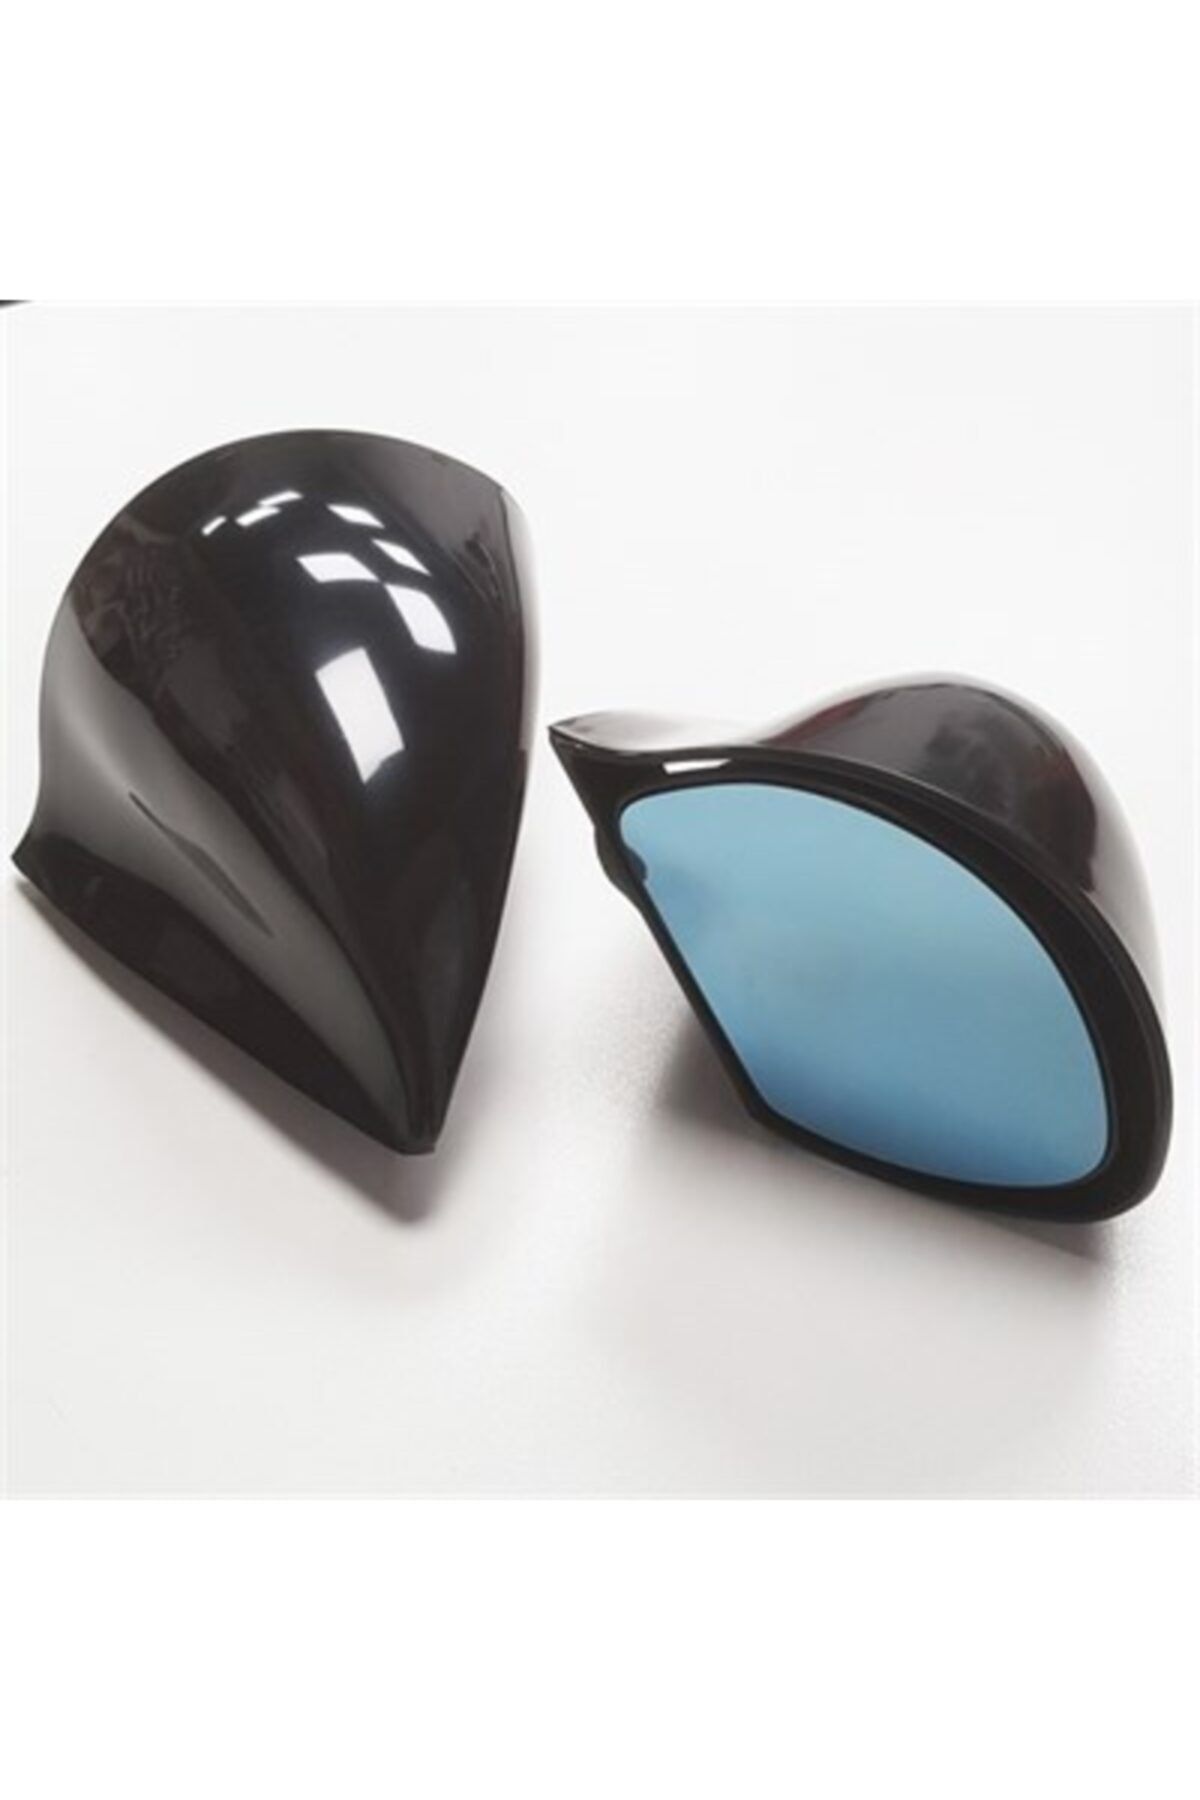 Carub Z3 Tipi Mavi Camlı Siyah Gövde Yan Ayna Sağ+Sol Takım